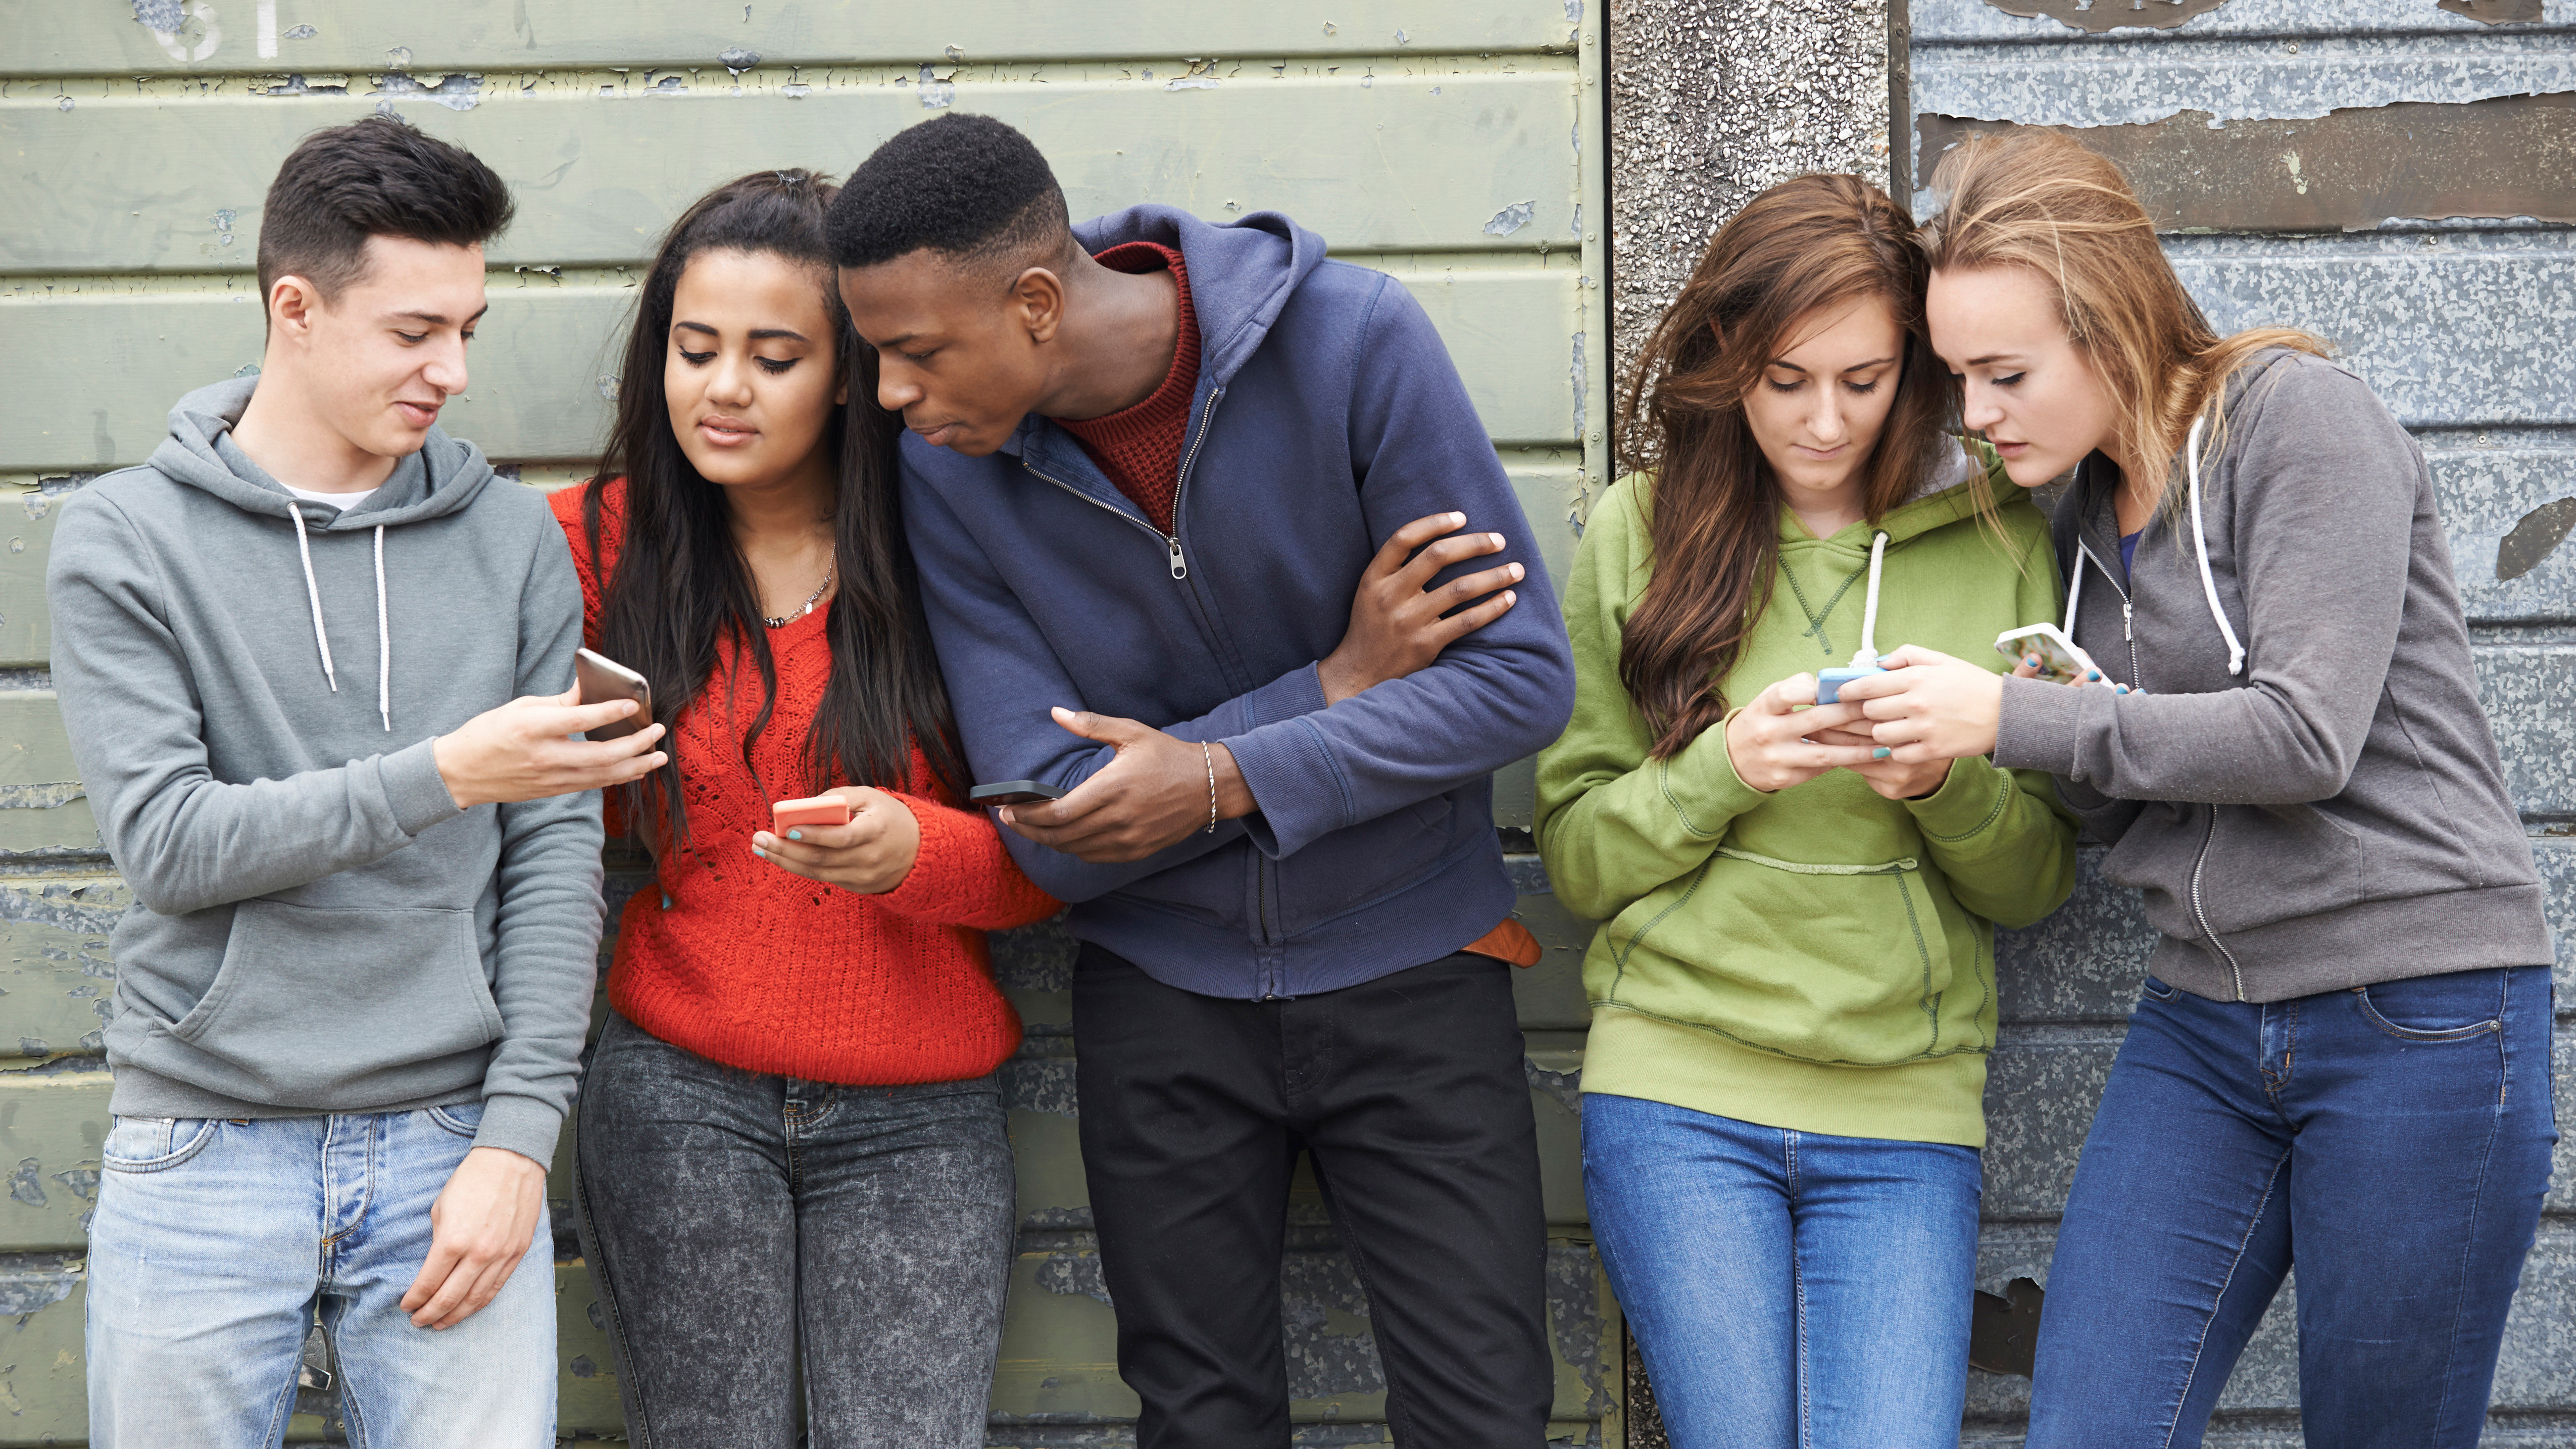 Eine Gruppe Jugendlicher zeigt sich gegenseitig etwas auf dem Smartphone. | picture alliance / Loop Images